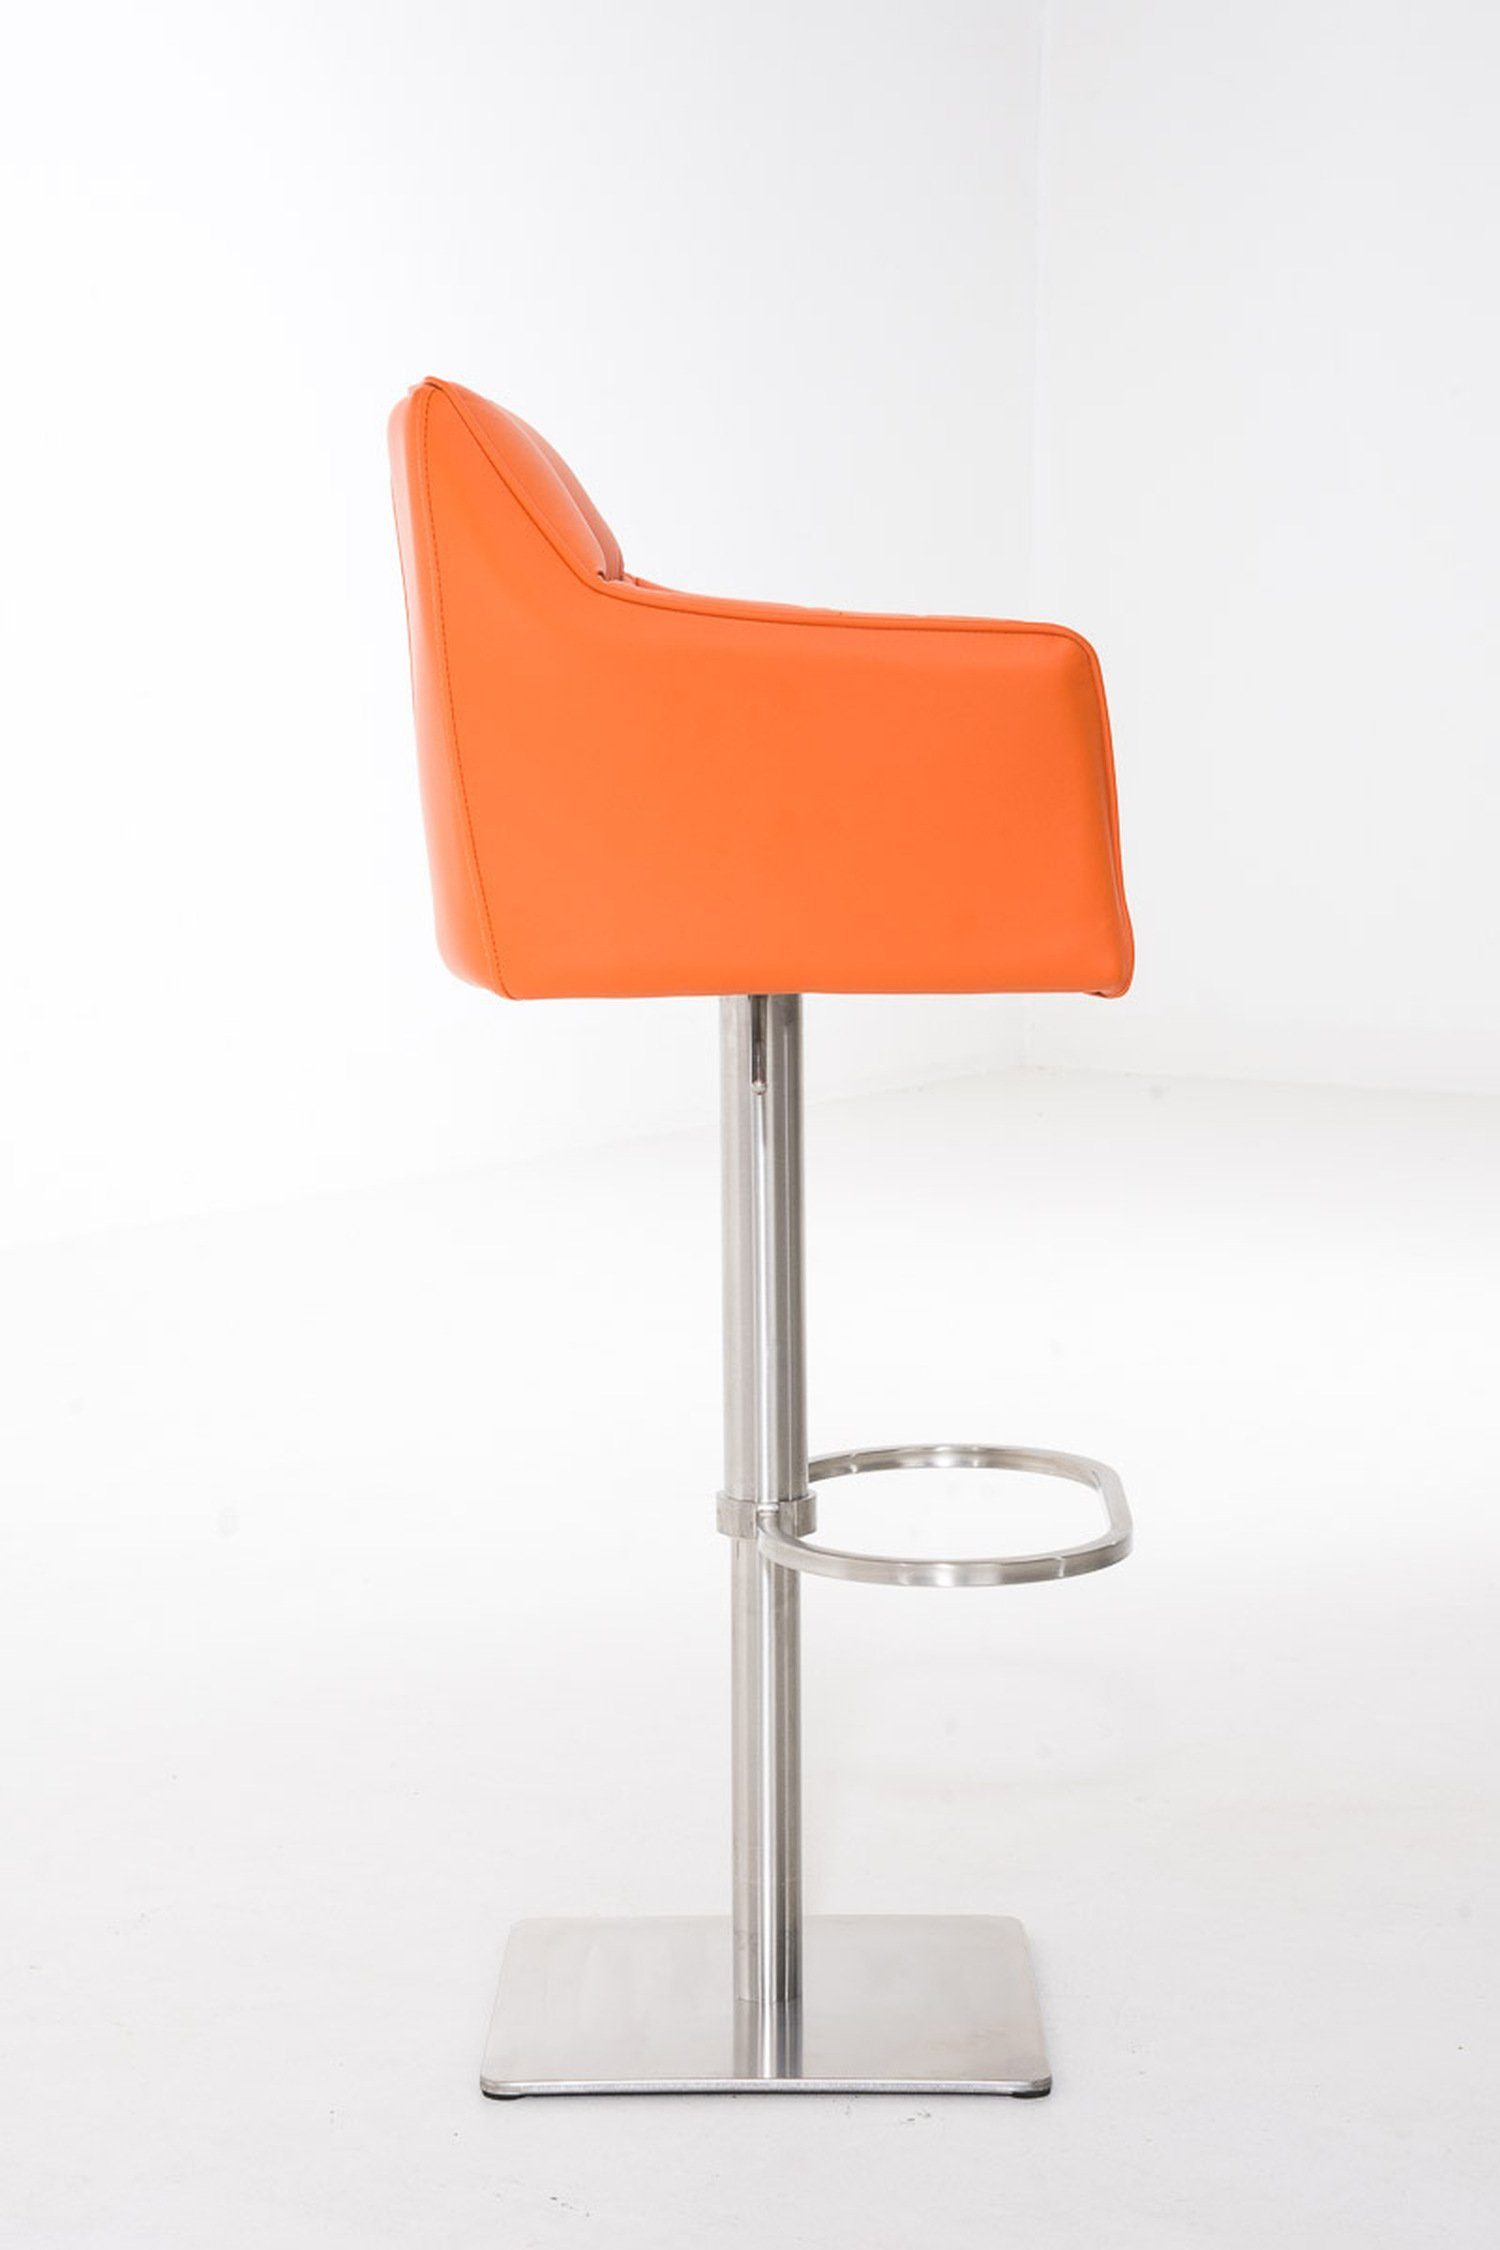 TPFLiving Barhocker Damaso drehbar - Sitzfläche: 360° (mit Gestell und & für - Rückenlehne Kunstleder Fußstütze Hocker Orange - Theke Küche), Edelstahl